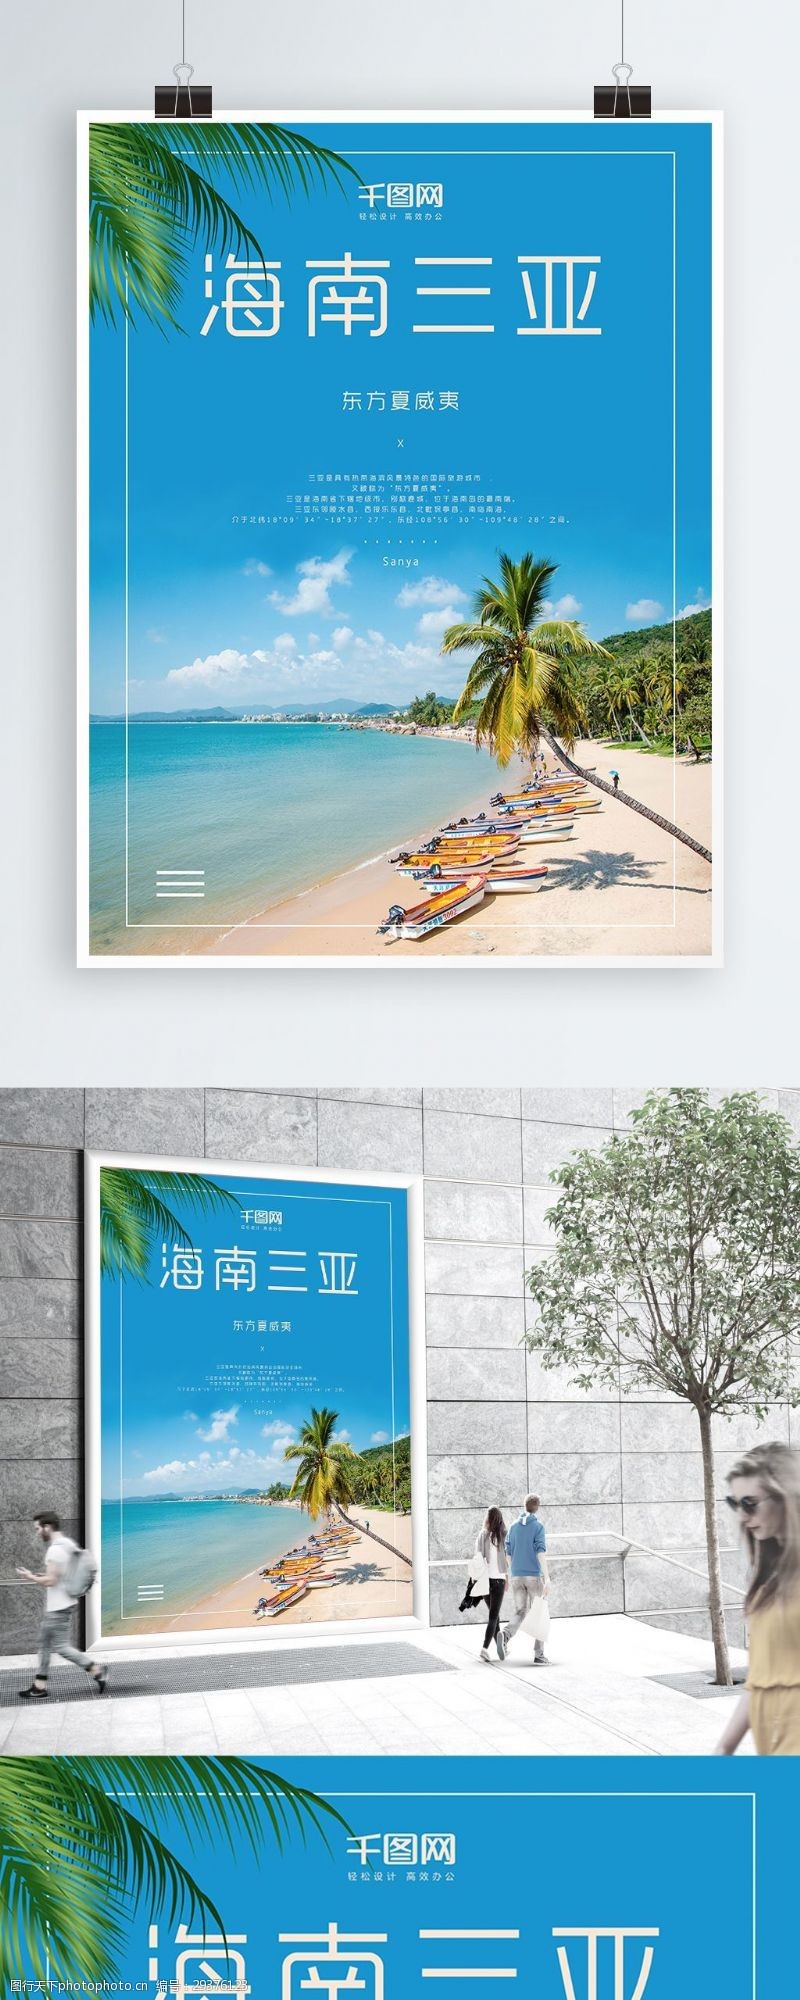 促销旅游简洁海南三亚旅游促销海报